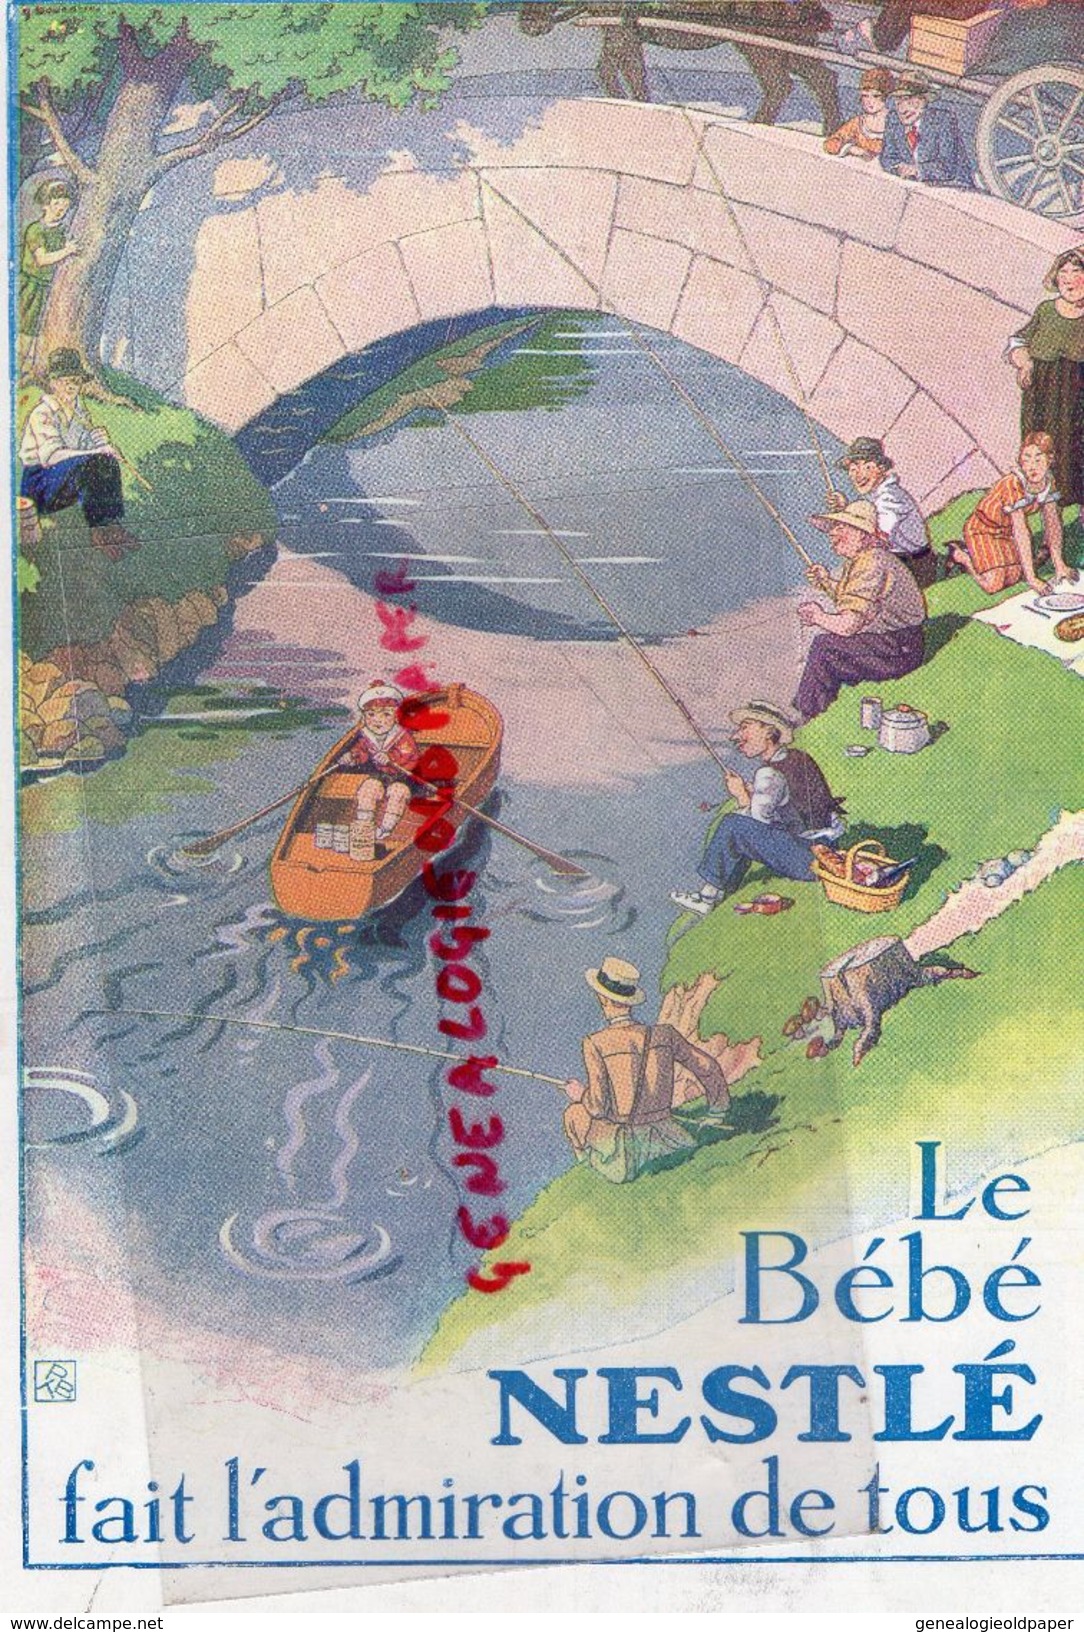 REVUE MODES & TRAVAUX-1ER NOVEMBRE 1932- N° 309- BOUCHERIT-FOURRURES GUELIS PARIS-BEBE NESTLE-MOLYNEUX-LELONG- - Fashion